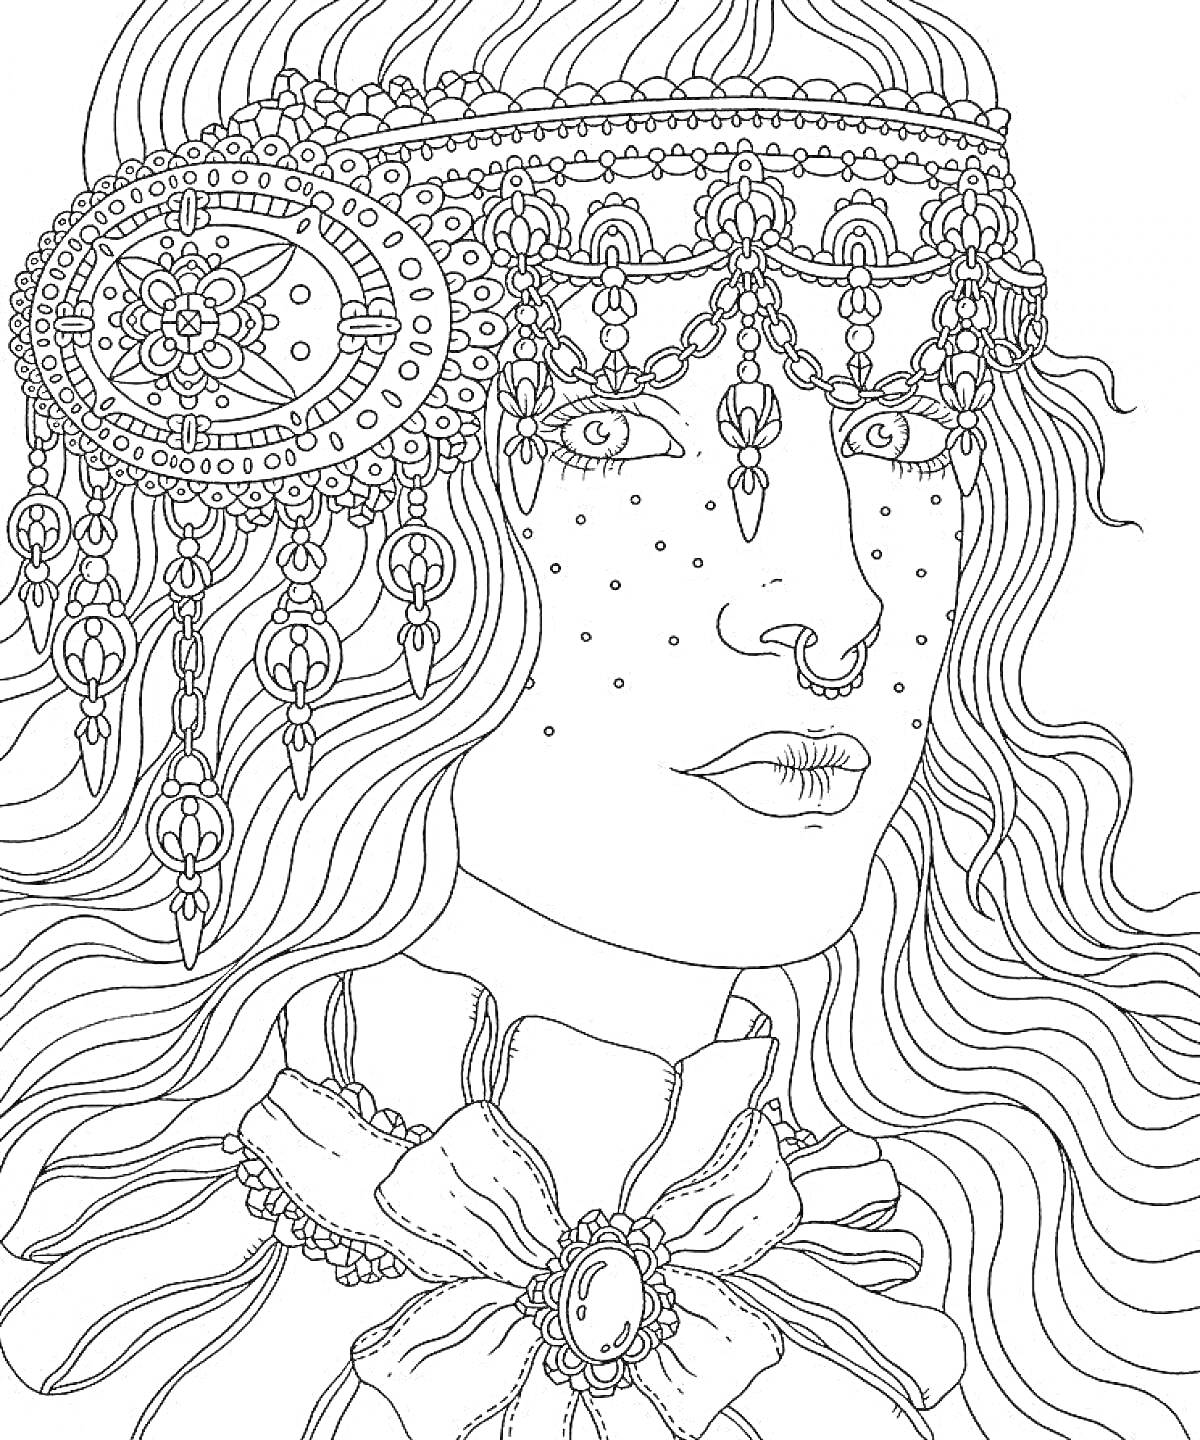 Раскраска Лицо молодой женщины с вьющимися волосами, украшенное головной повязкой с множеством мелких деталей и украшений, включая серьги с узорами и ленты на шее